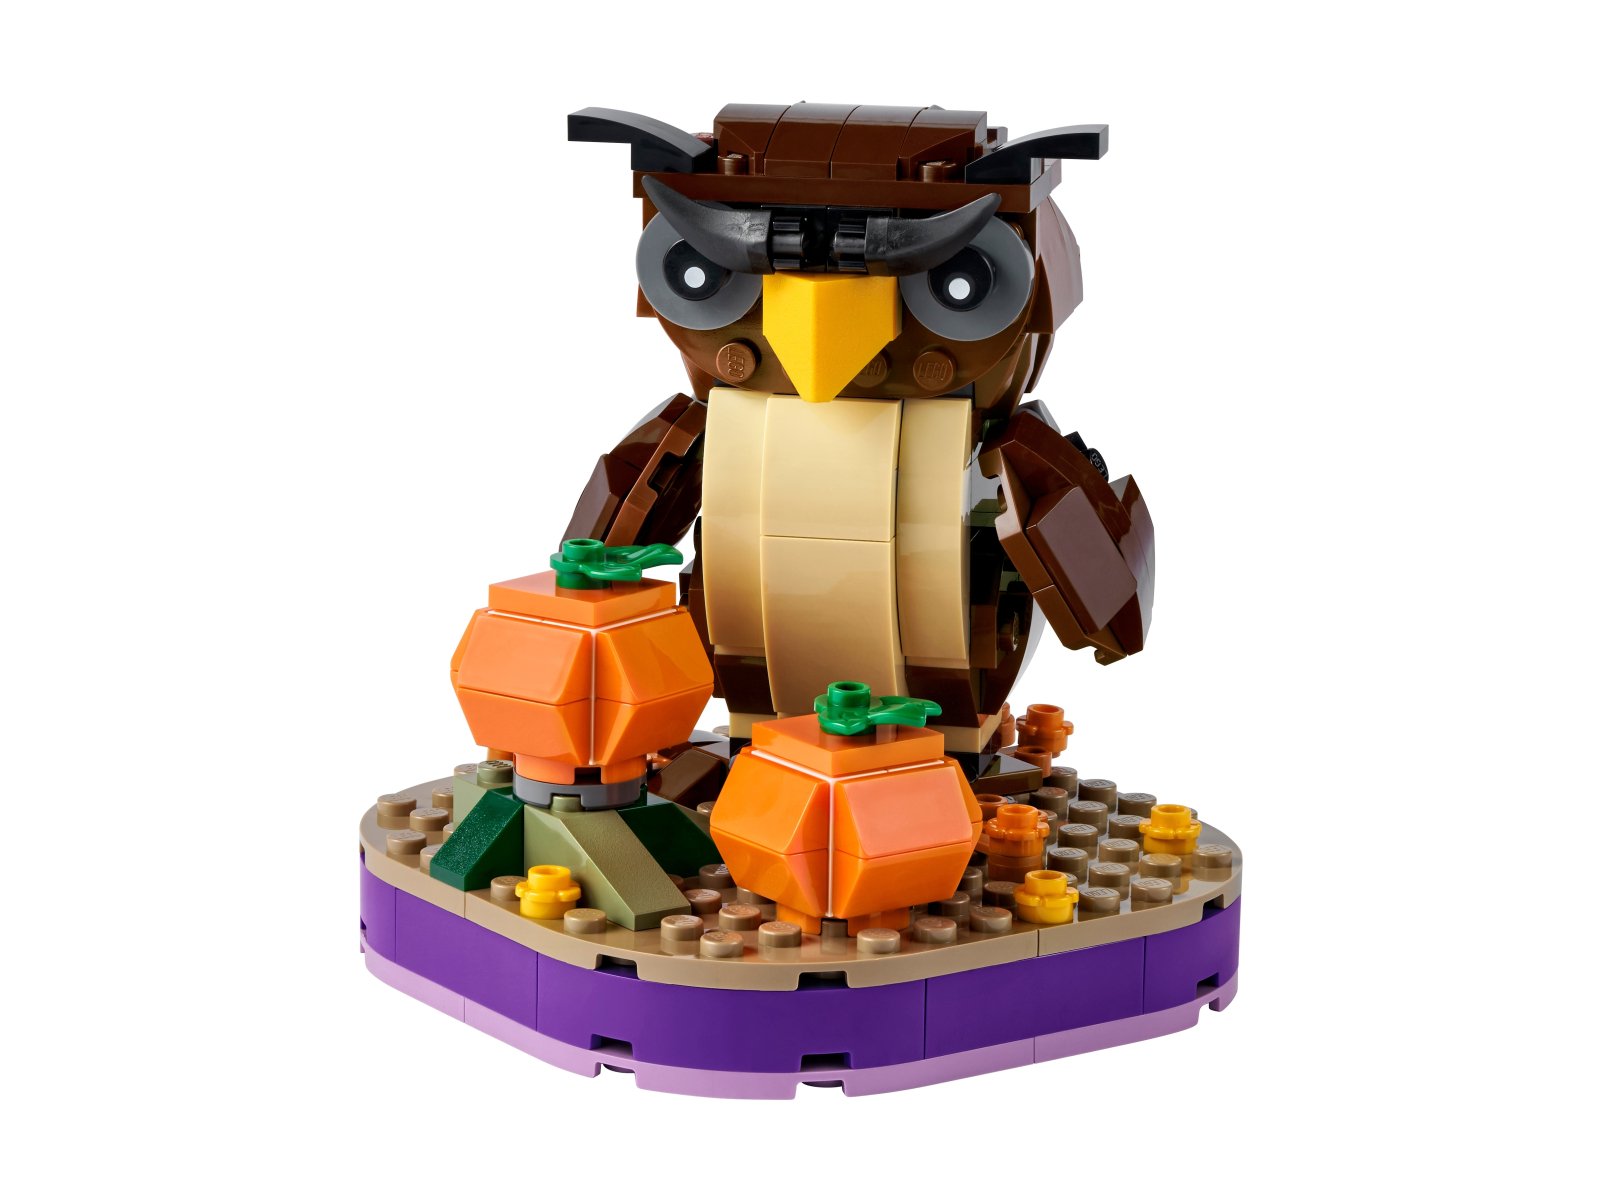 LEGO 40497 Halloweenowa sowa